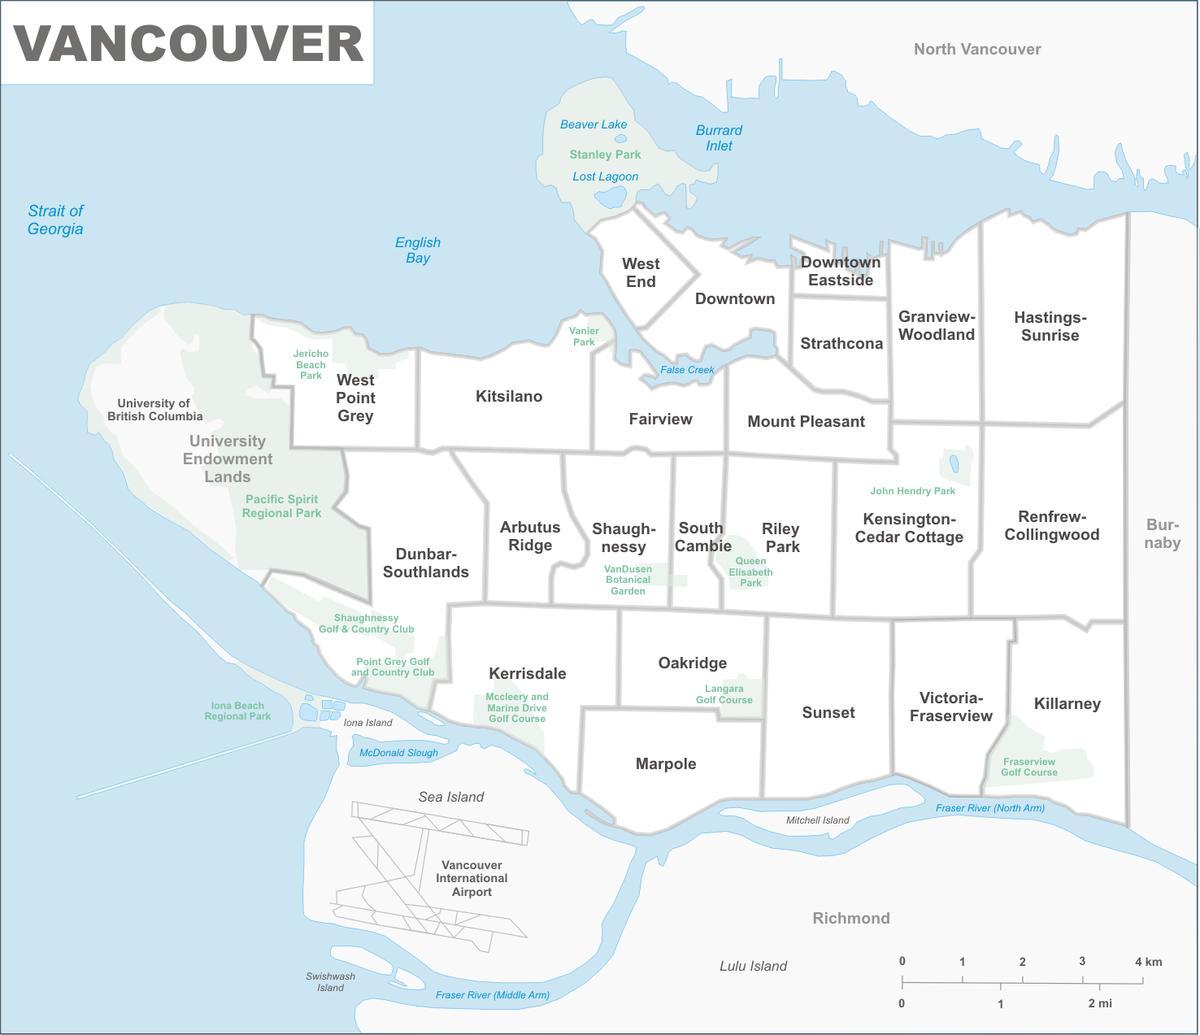 नक्शे के वैंकूवर और क्षेत्र